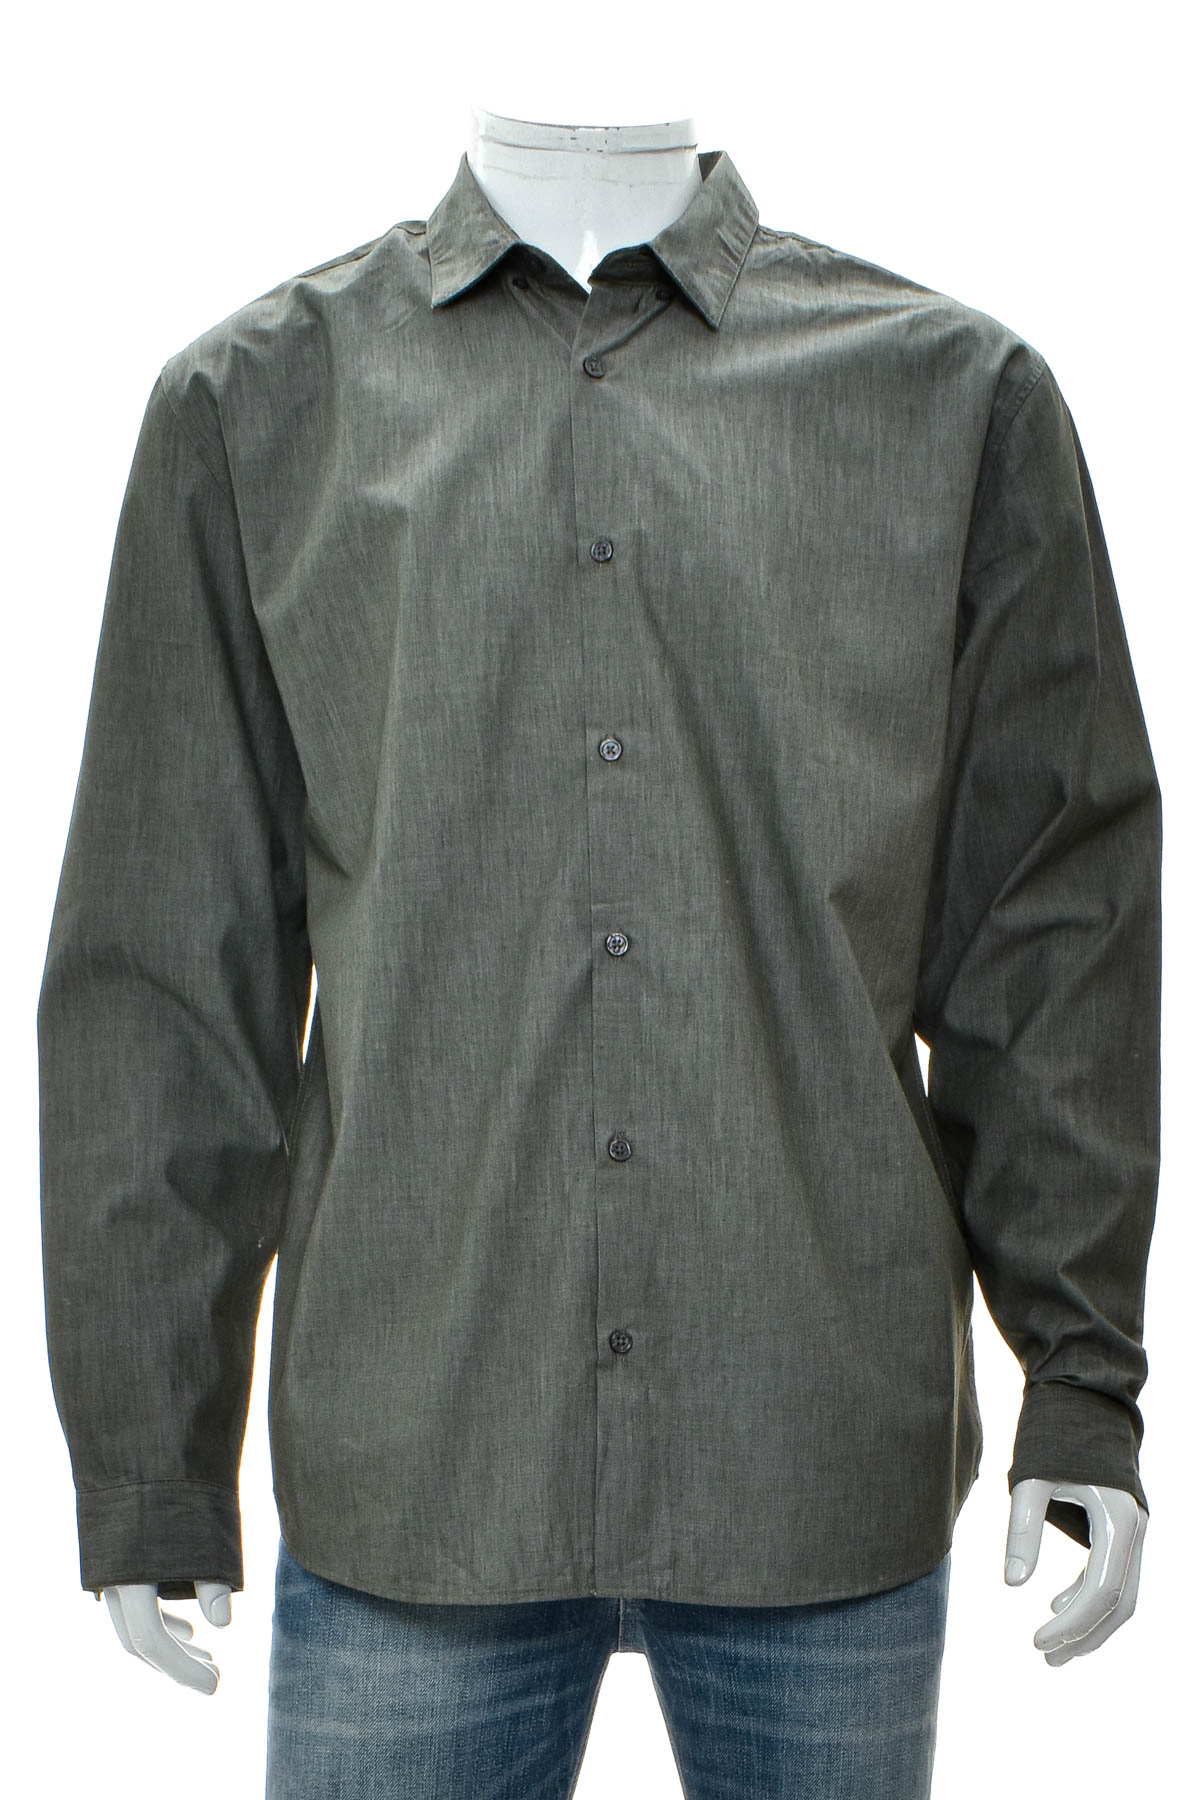 Ανδρικό πουκάμισο - Anko - 0